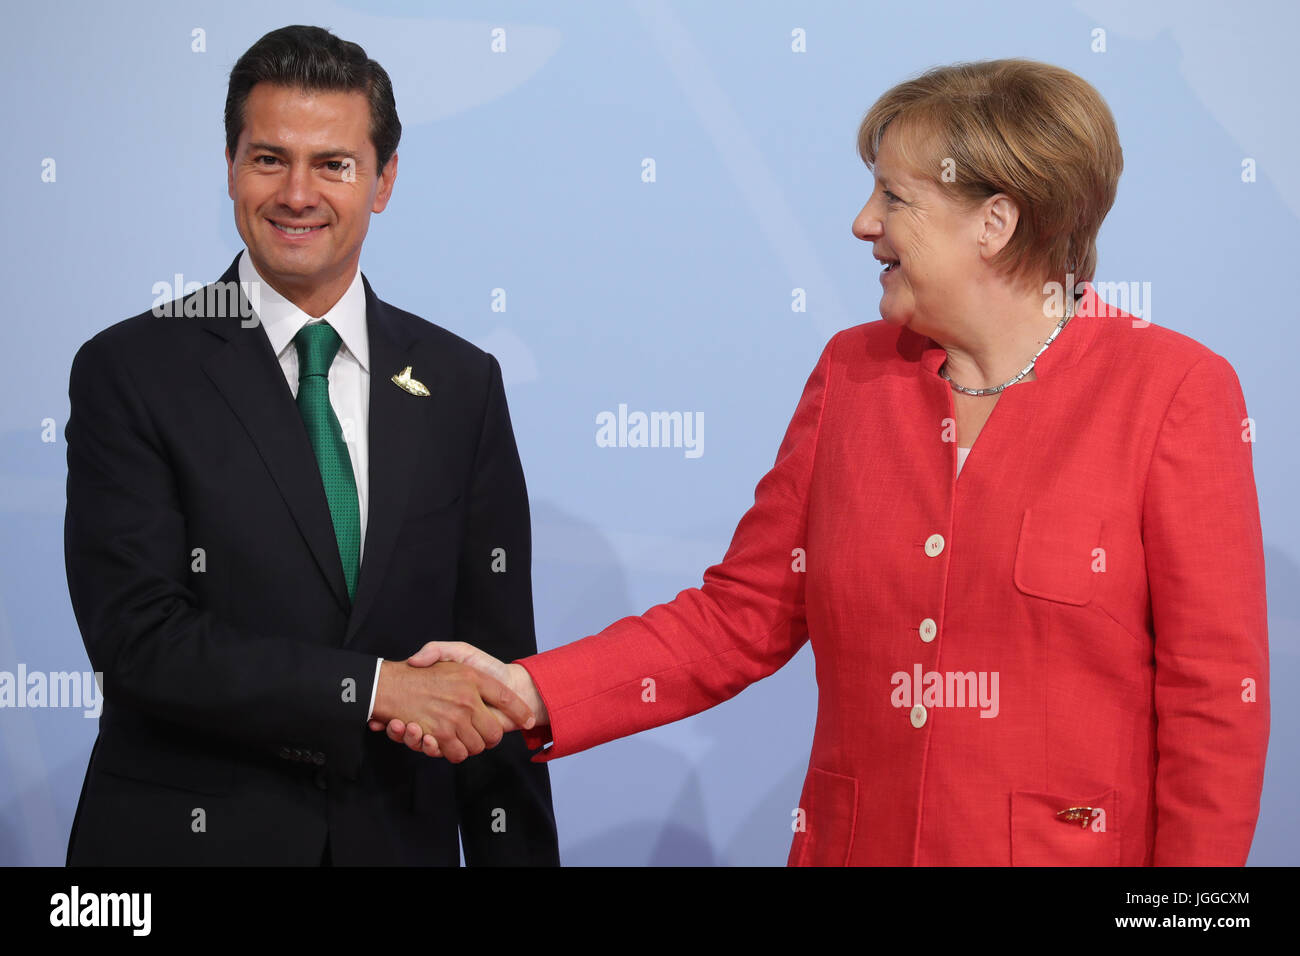 Amburgo, Germania. 7 Luglio, 2017. Il cancelliere tedesco Angela Merkel accoglie il Presidente del Messico Enrique Peña Nieto al vertice G20 ad Amburgo, Germania, 7 luglio 2017. I capi dei governi del G20 gruppo di paesi si sono riuniti in Amburgo sull'7-8 luglio 2017. Foto: Michael Kappeler/dpa/Alamy Live News Foto Stock